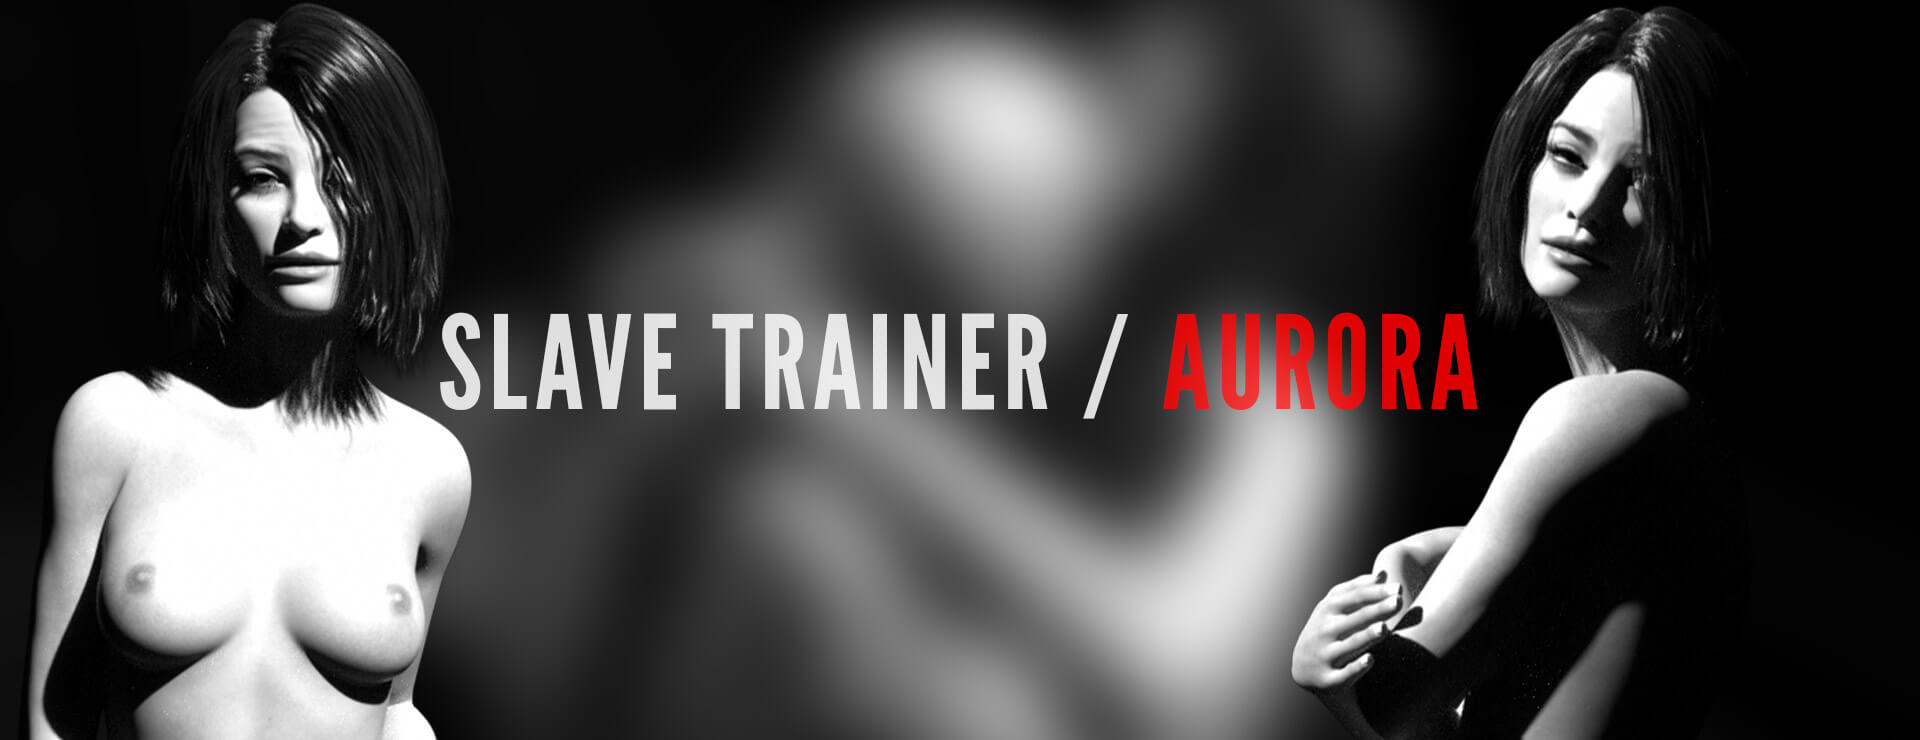 Slave Trainer Aurora - 仿真游戏 遊戲